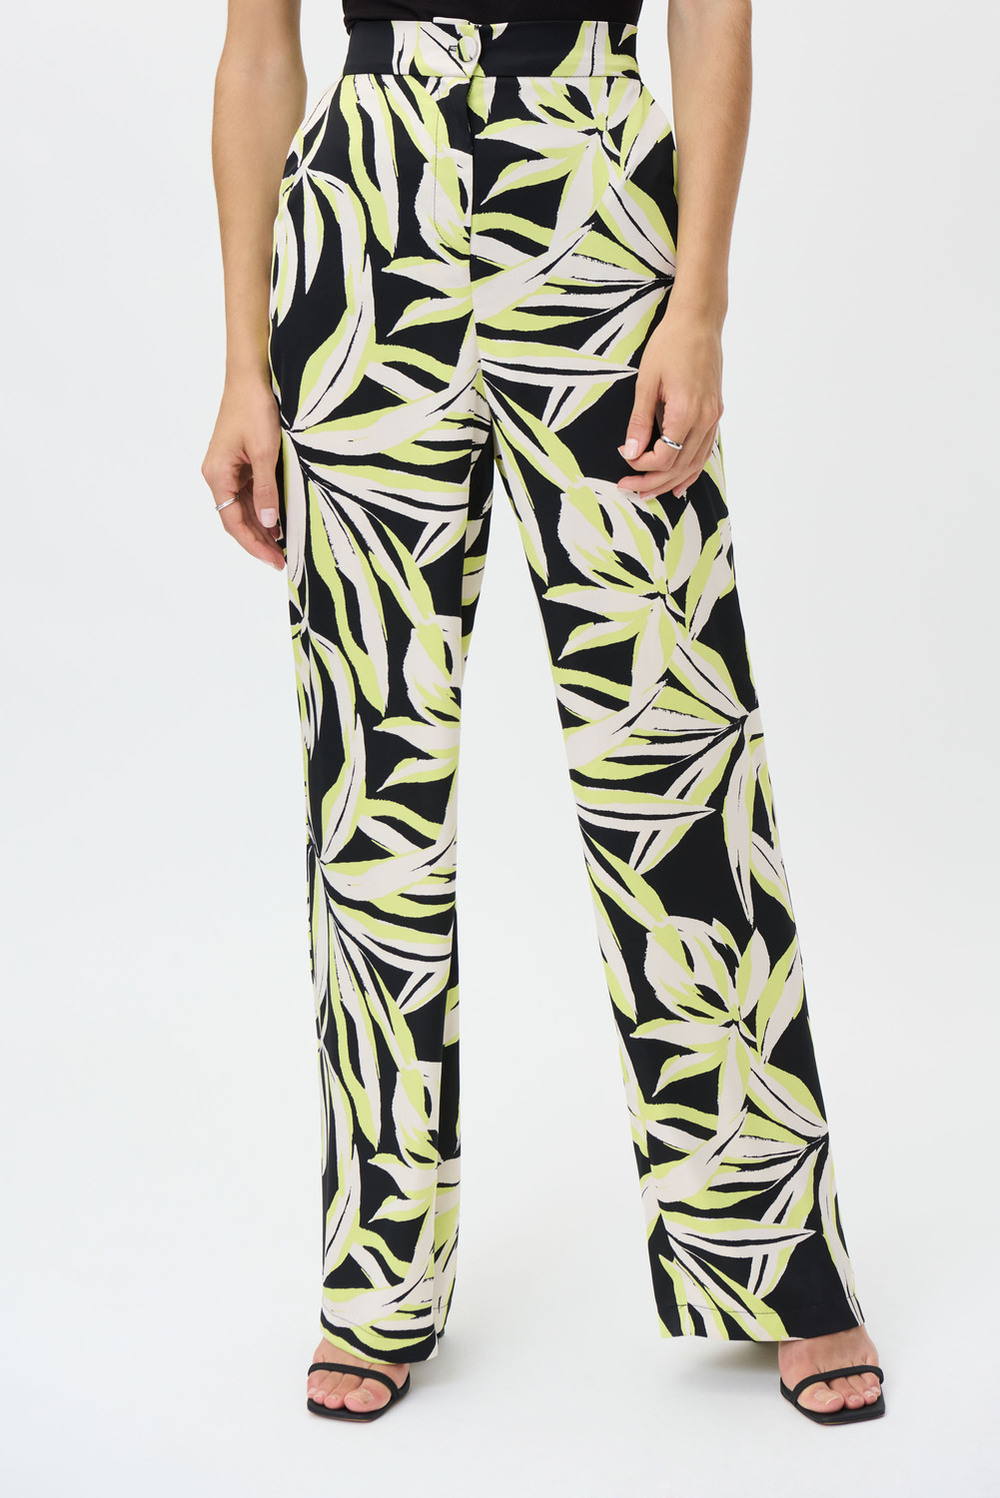 Palm Print Pants Style 232155. Black/multi